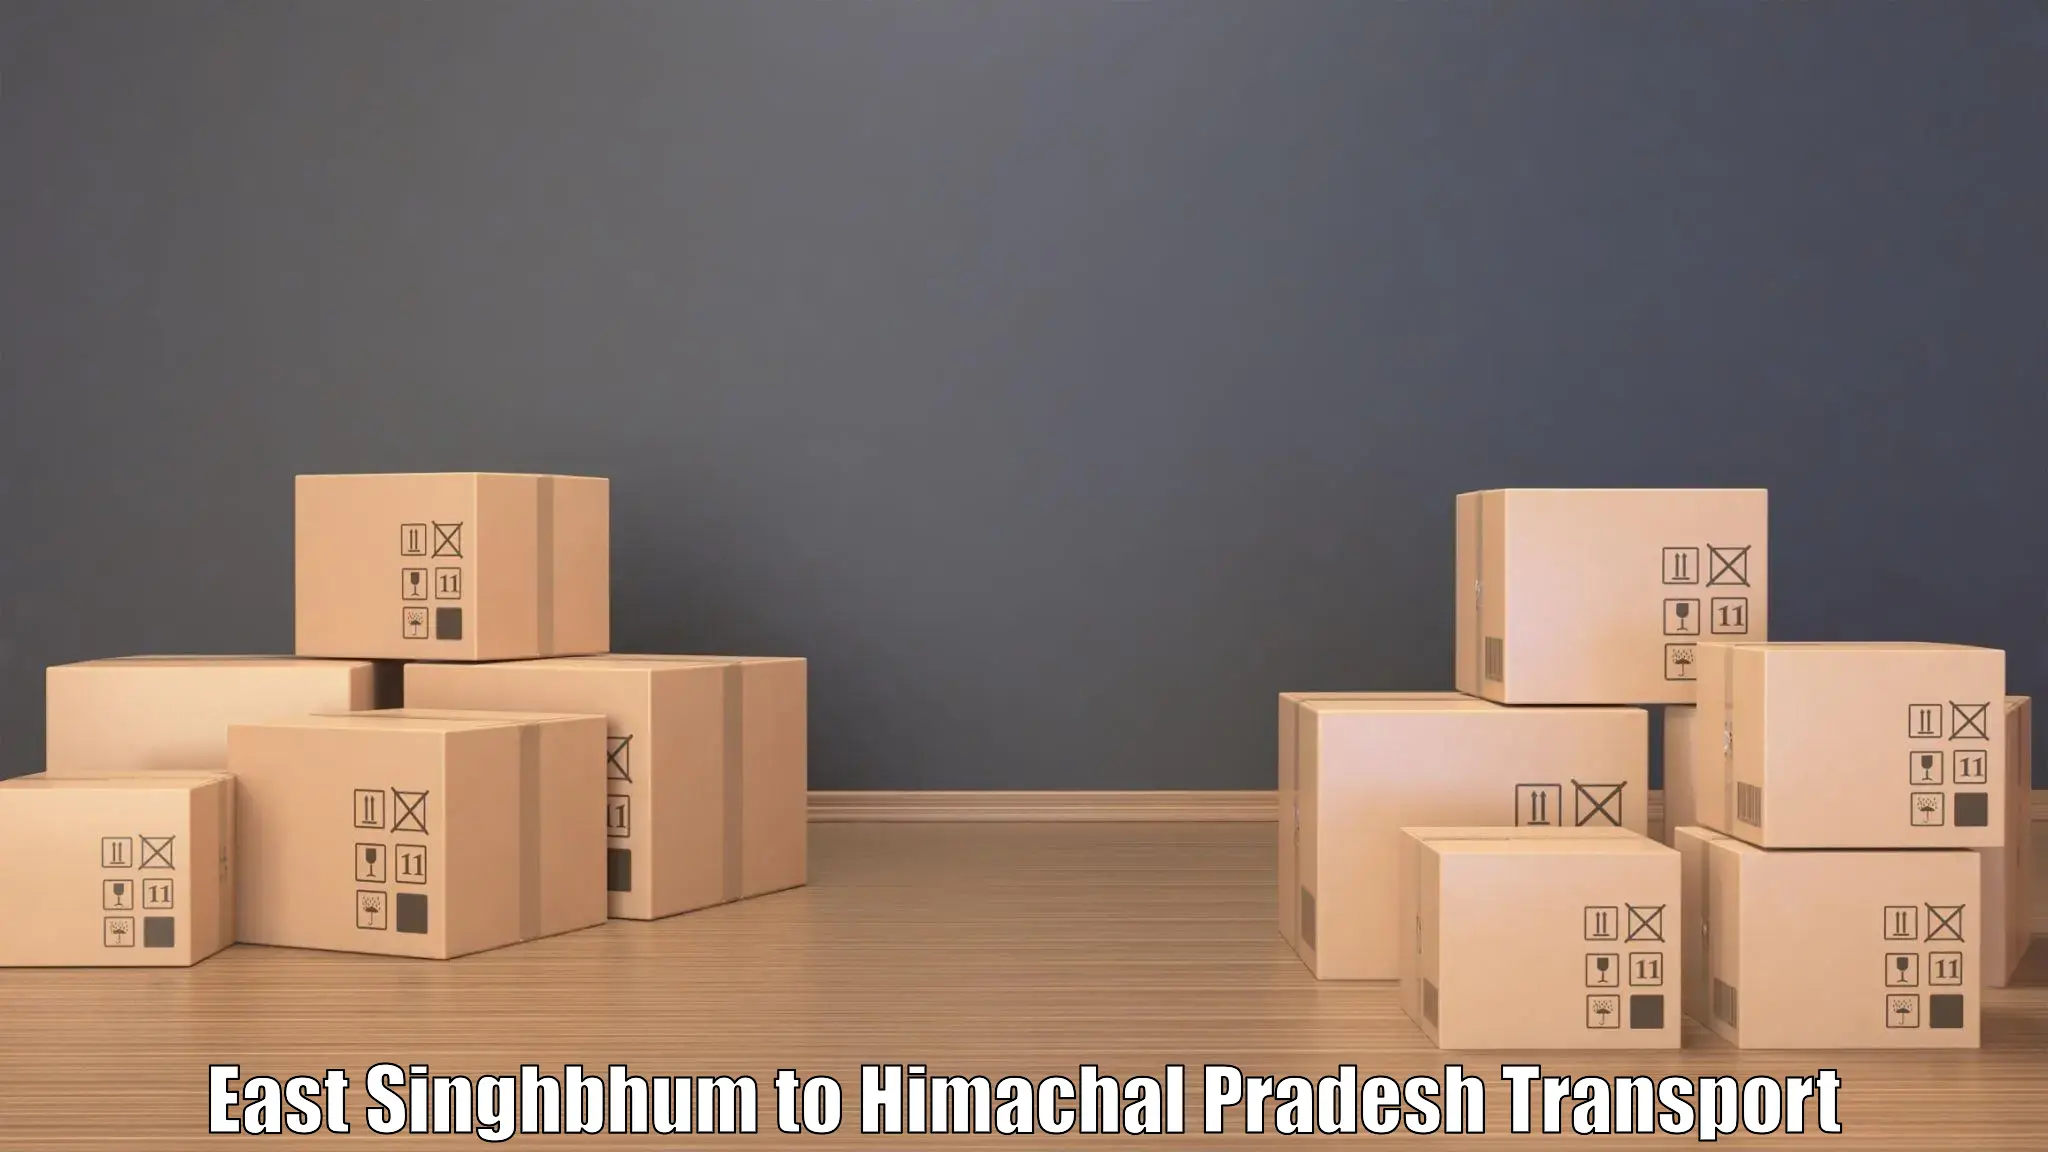 Shipping partner East Singhbhum to Nagwain